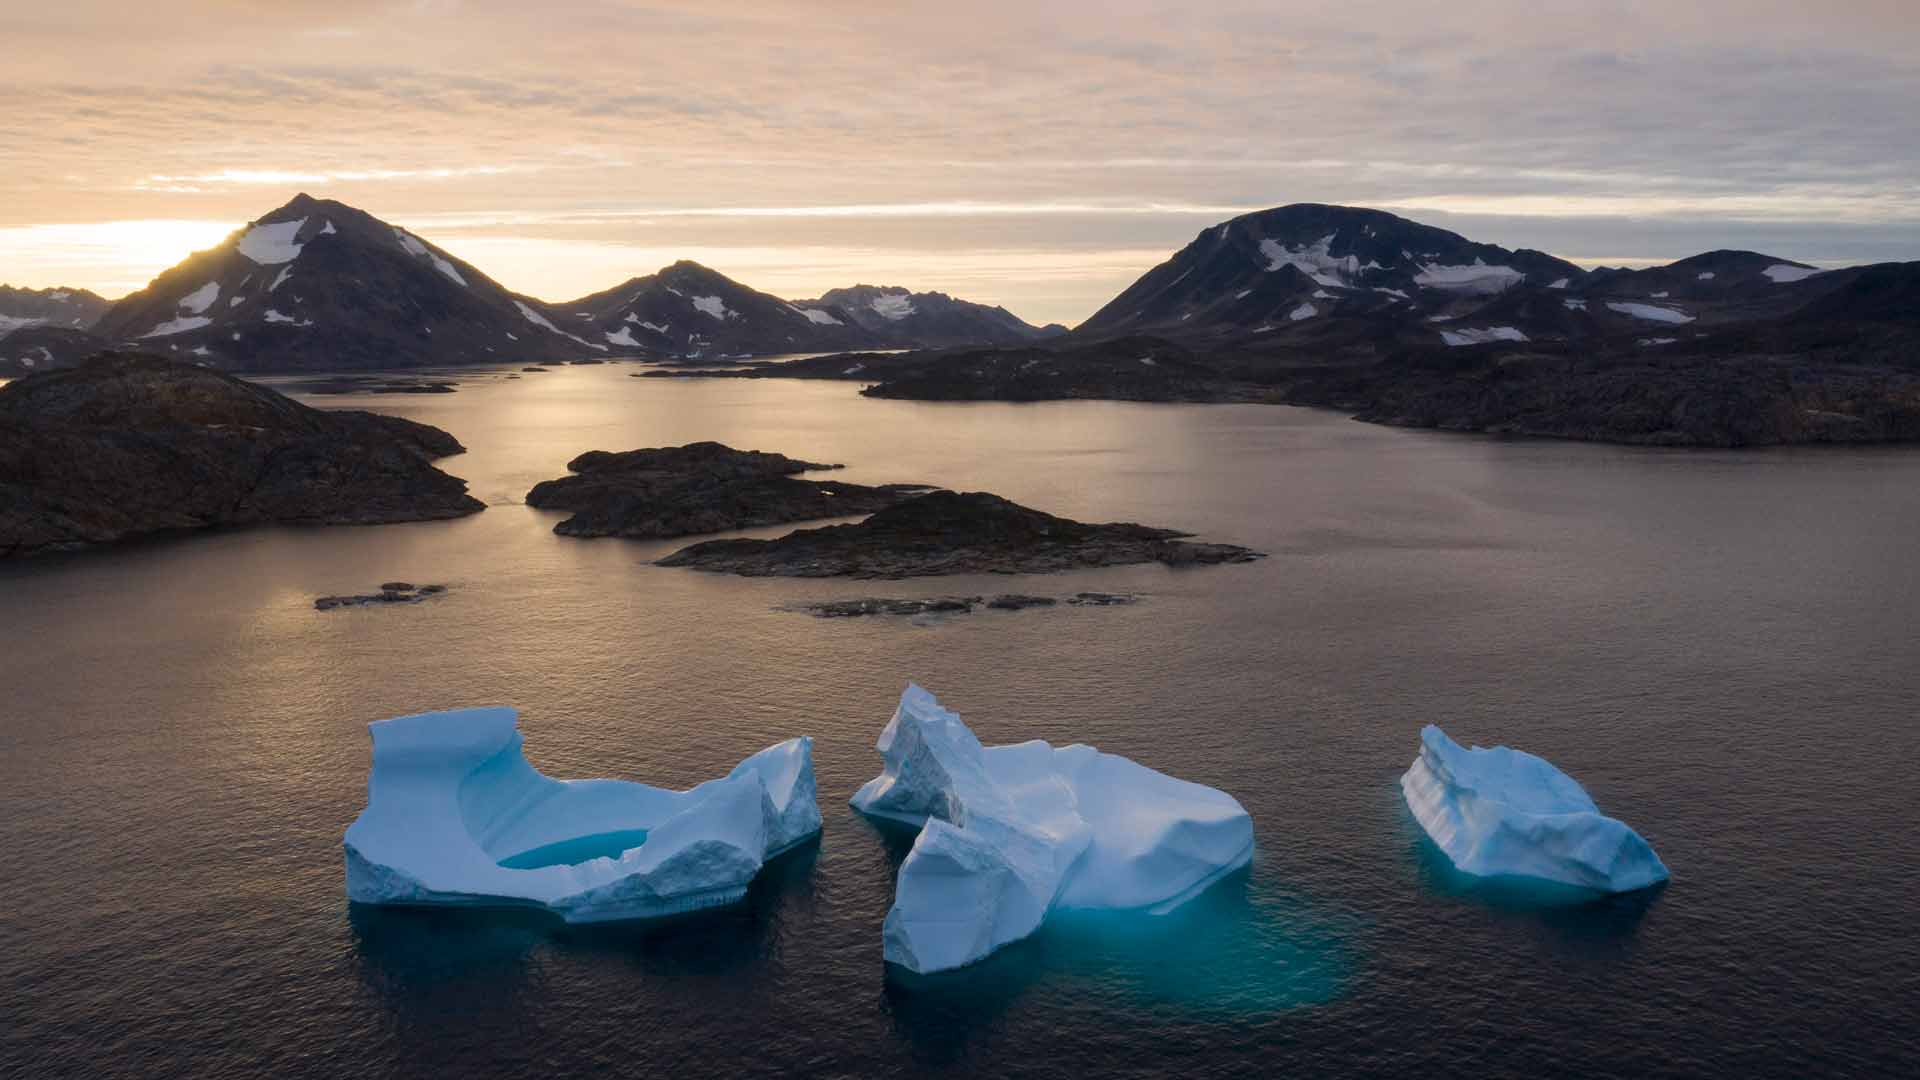 Groenlandia "no está en venta", pero ¿qué otras islas puede comprar Trump?